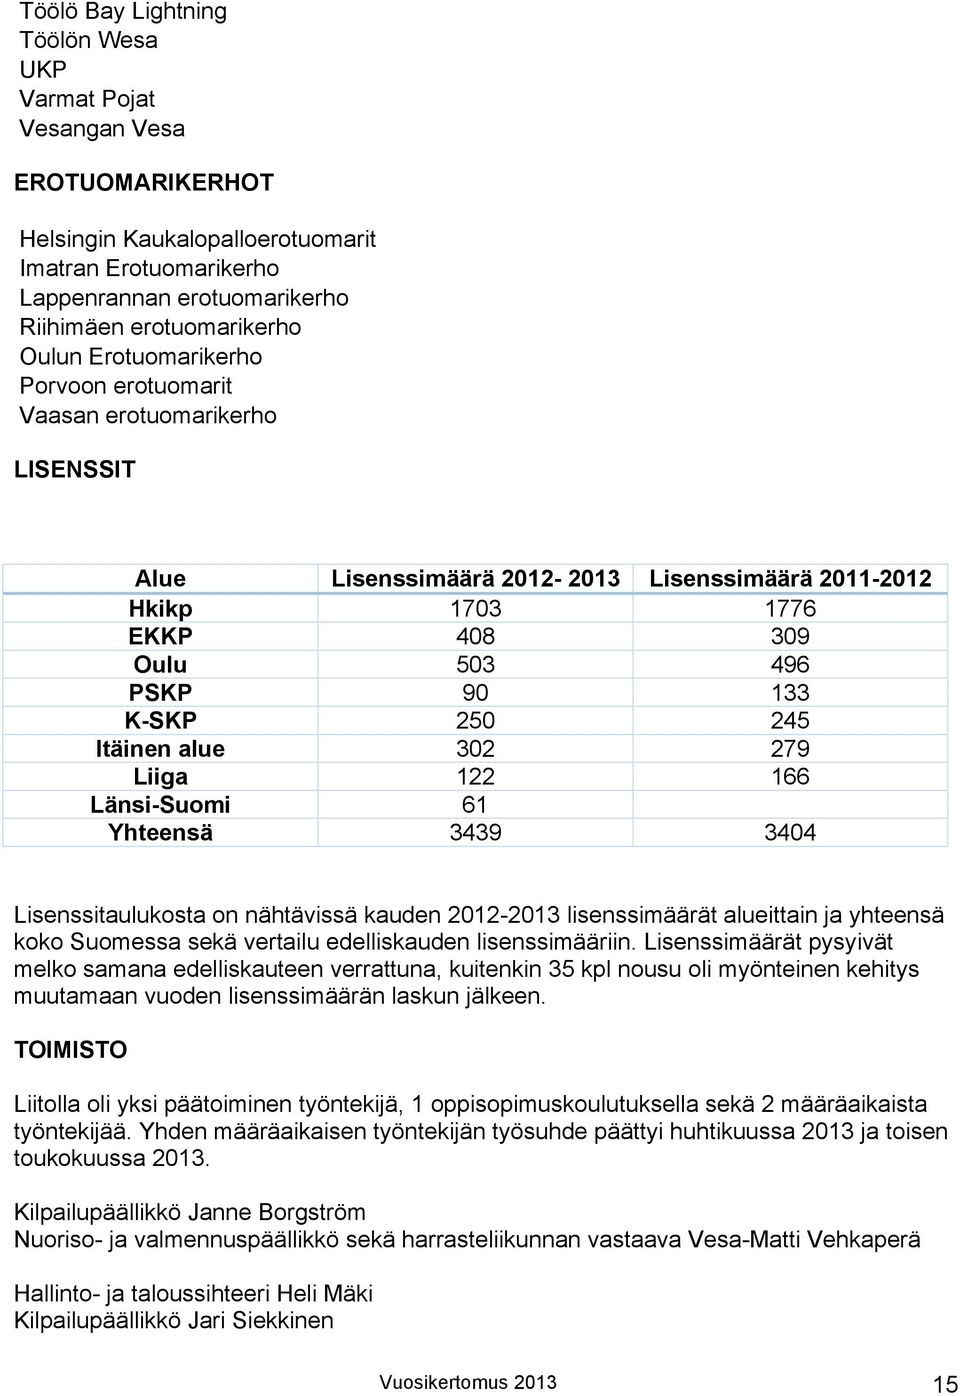 alue 302 279 Liiga 122 166 Länsi-Suomi 61 Yhteensä 3439 3404 Lisenssitaulukosta on nähtävissä kauden 2012-2013 lisenssimäärät alueittain ja yhteensä koko Suomessa sekä vertailu edelliskauden